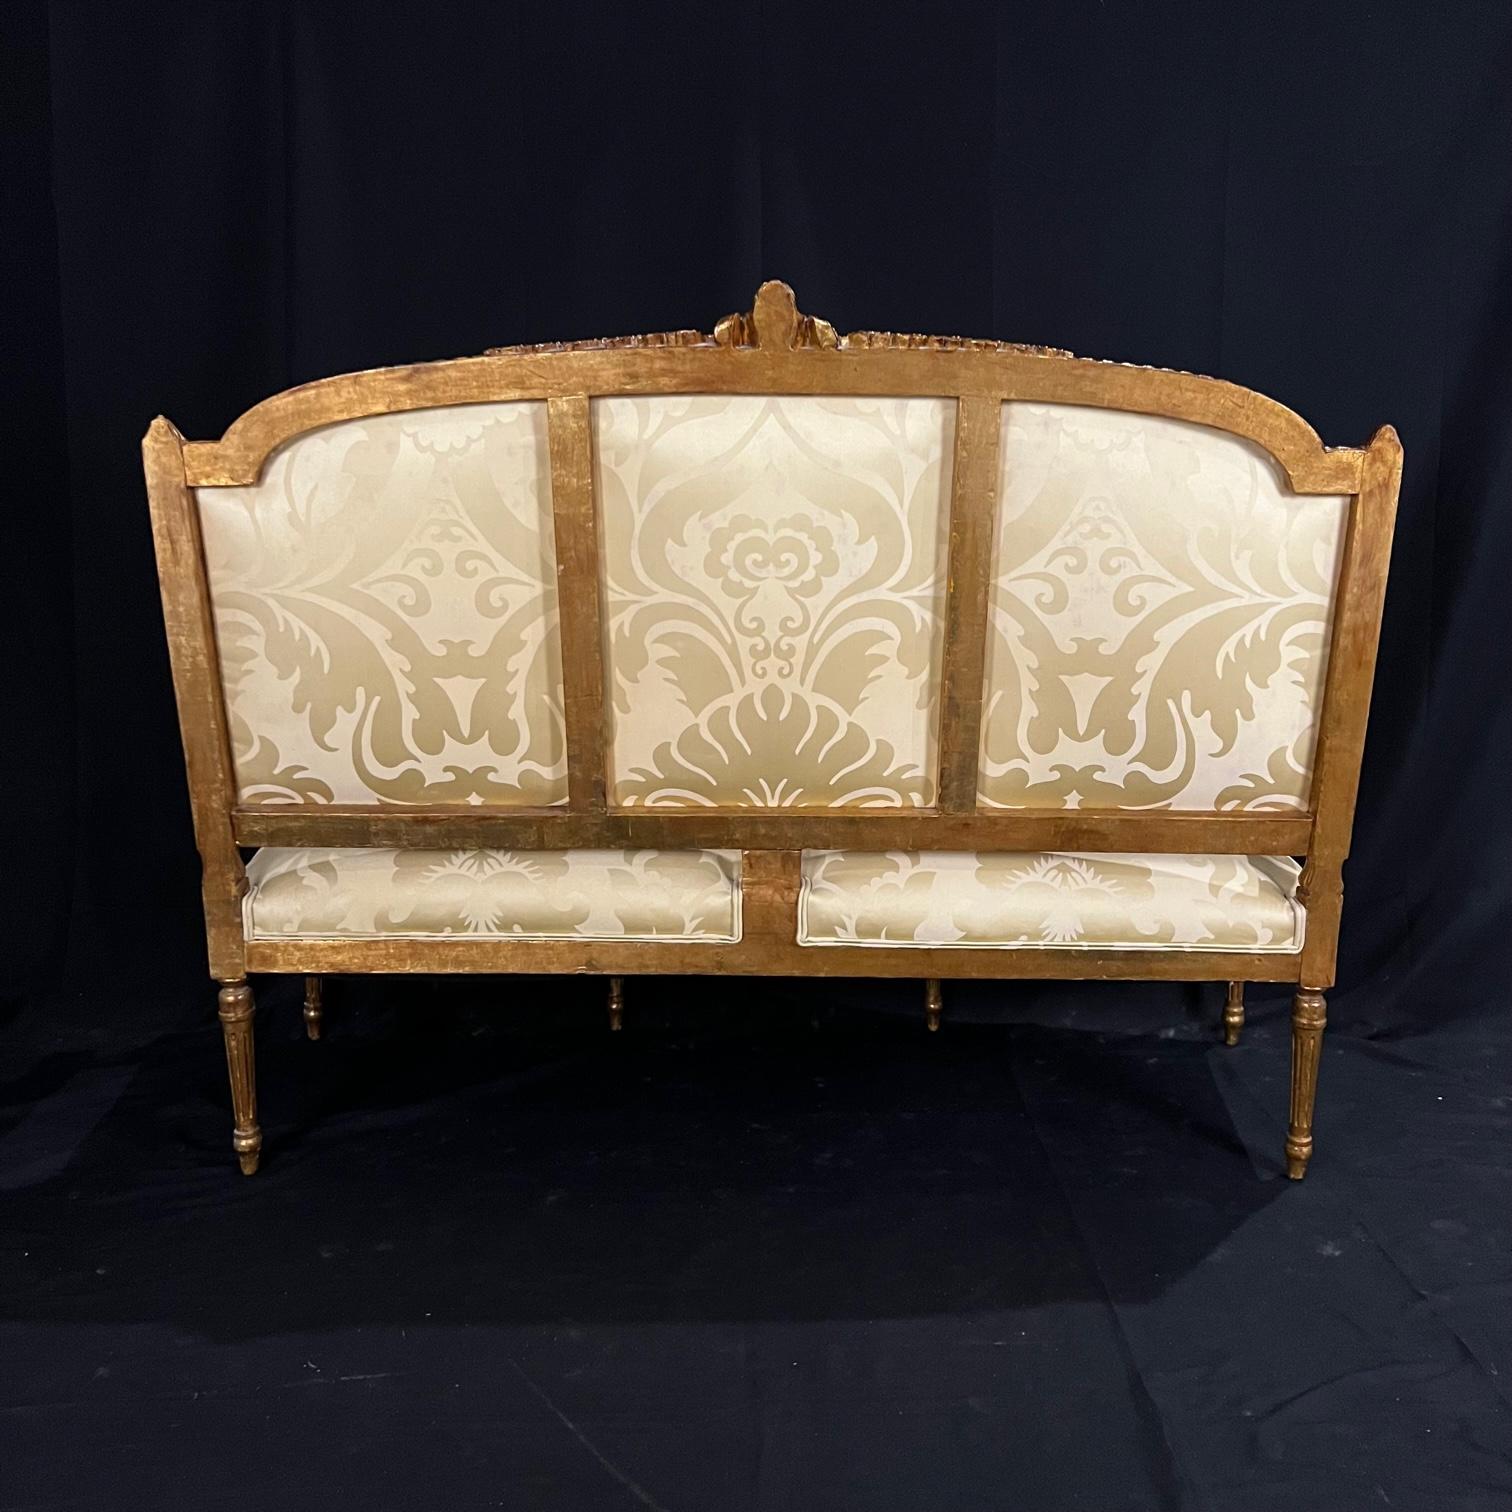 Sofa im Louis XVI-Stil mit geschnitztem, vergoldetem Holz und schöner neuer Polsterung. Der schöne Rahmen zeigt geriffelte Säulen, die von Akanthusblättern gekrönt werden. Der Sockel besteht aus kannelierten und sich verjüngenden Füßen. Der Gürtel